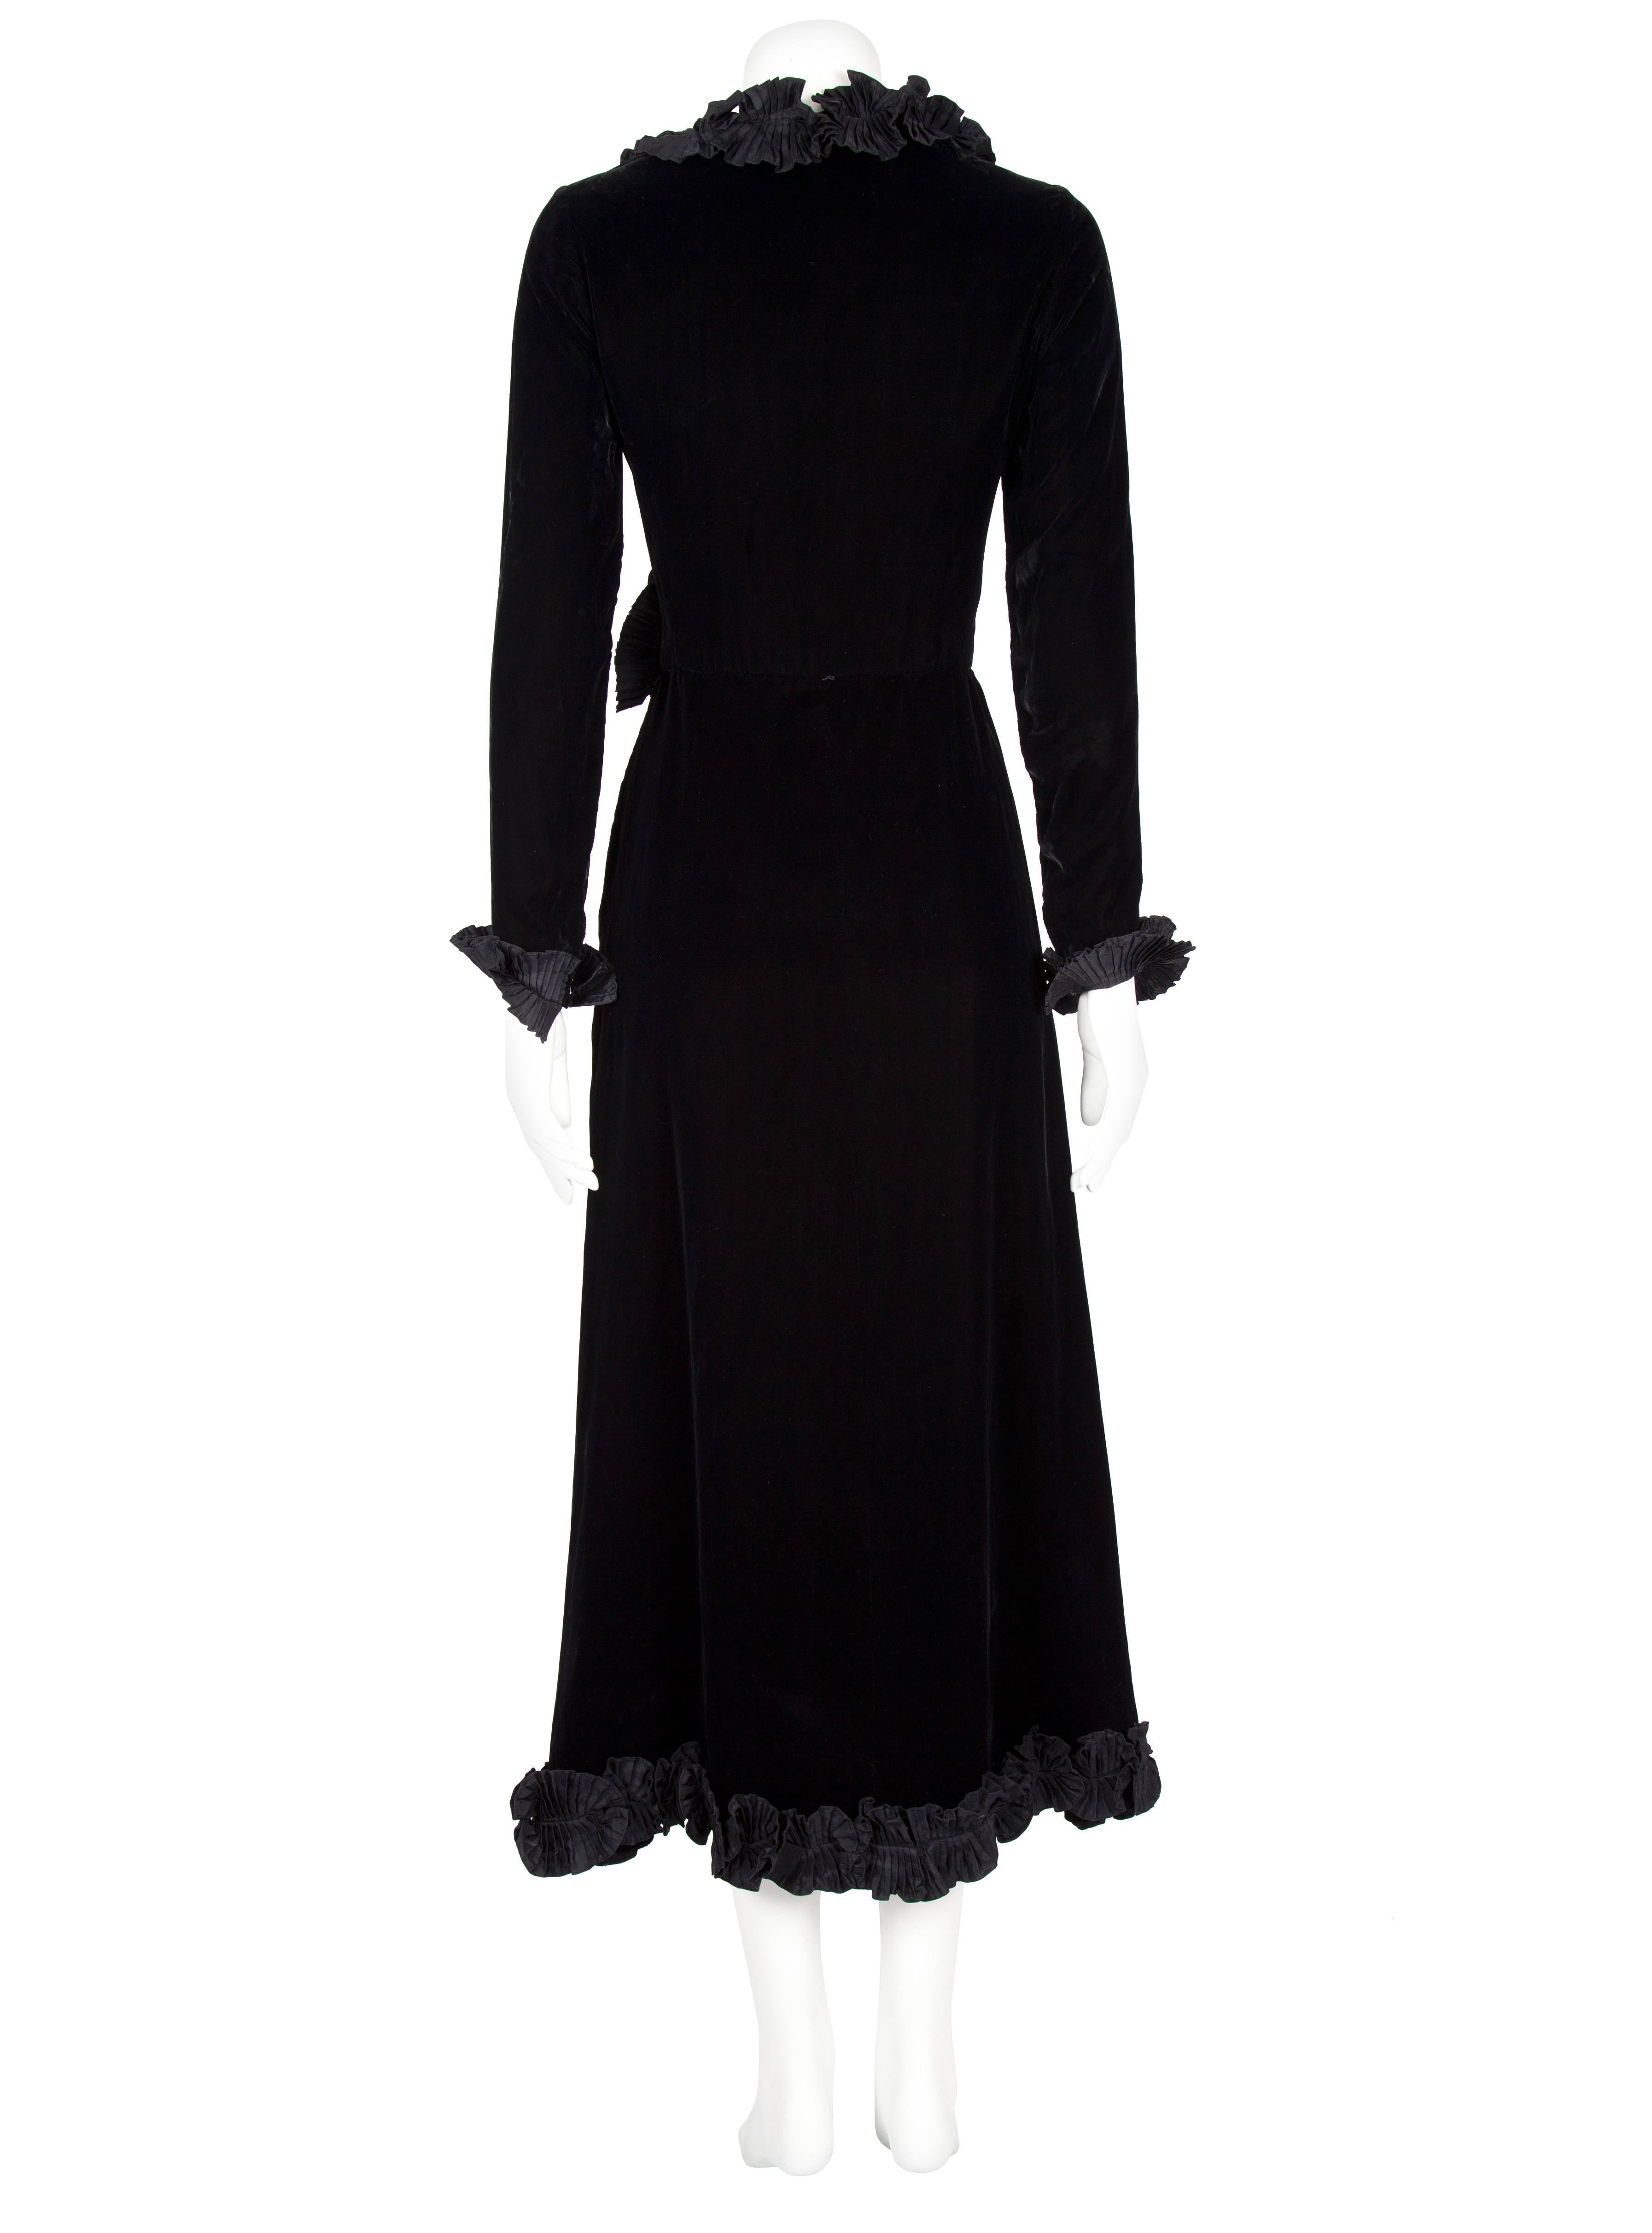 Women's 1980s Yves Saint Laurent Rive Gauche Black Velvet Evening Dress with Ruffles